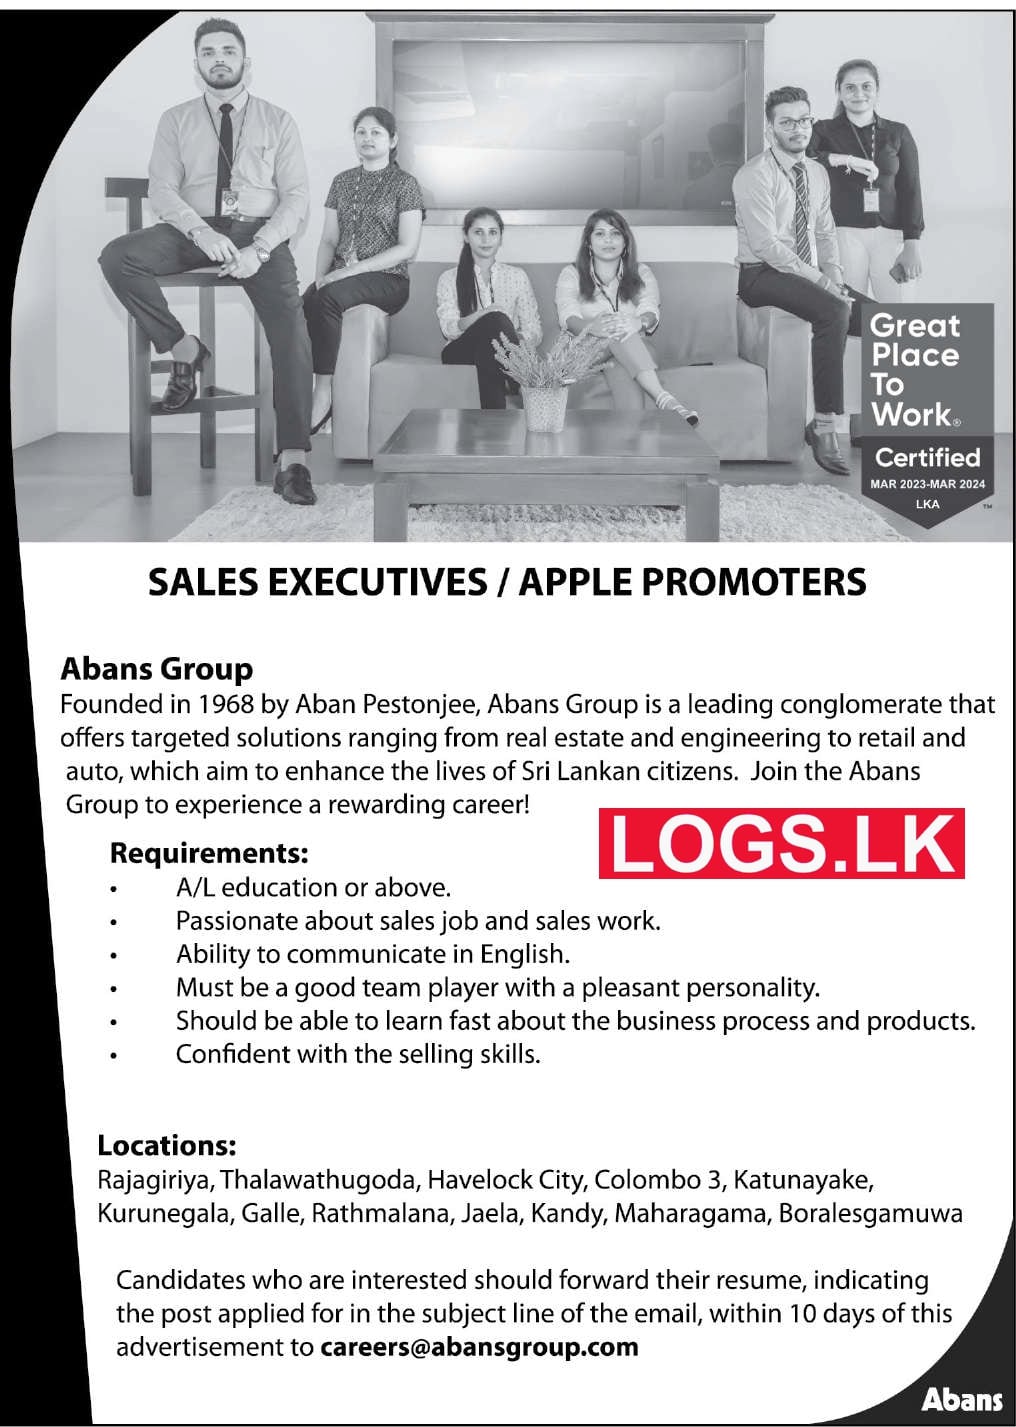 Sales Executives (Apple Promoters) Vacancies at Abans Group Job Vacancies